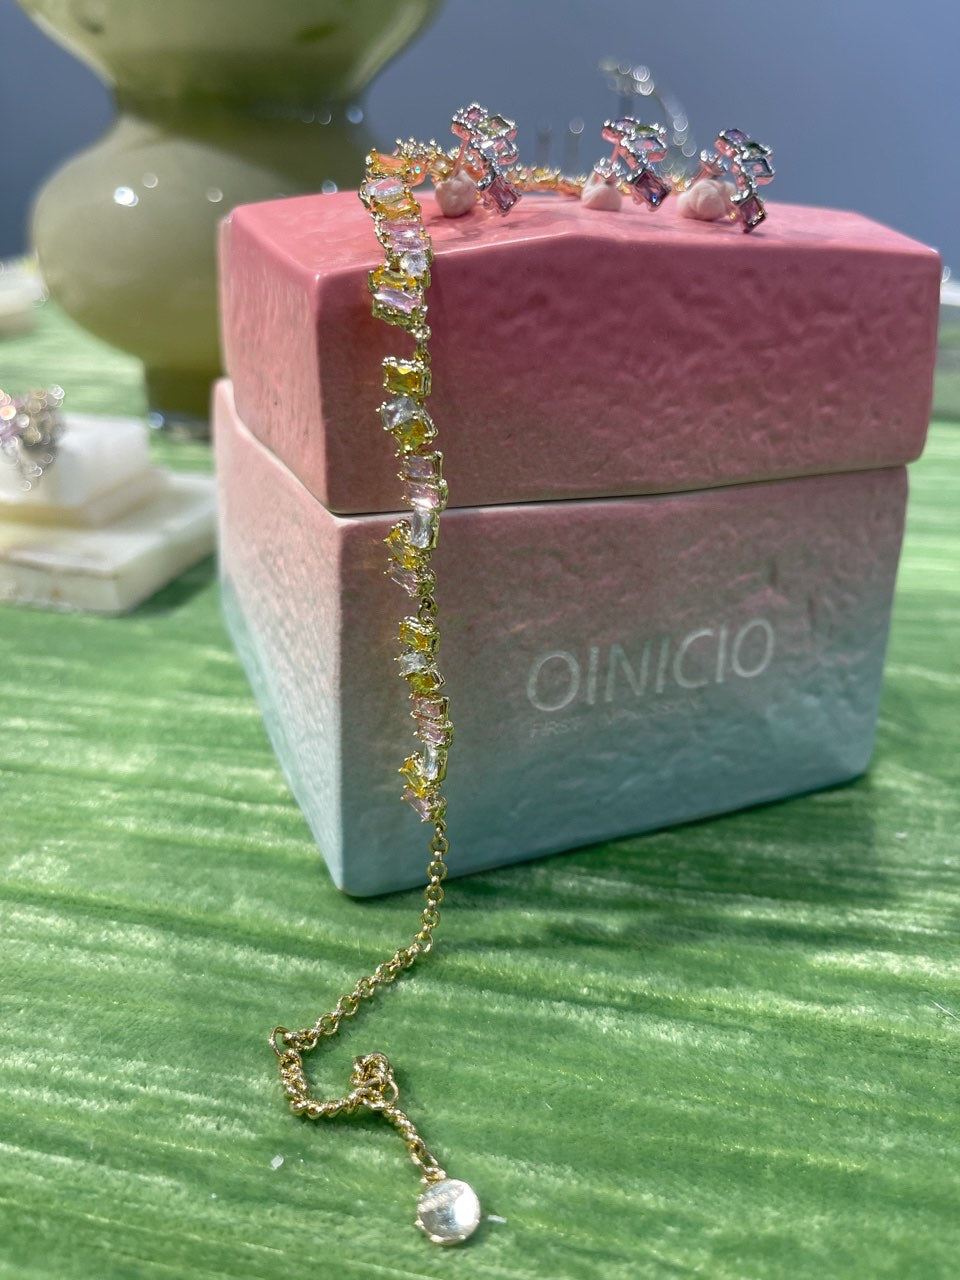 Shine Bright with Oinicio's Sparkling Colored Zircon Necklace